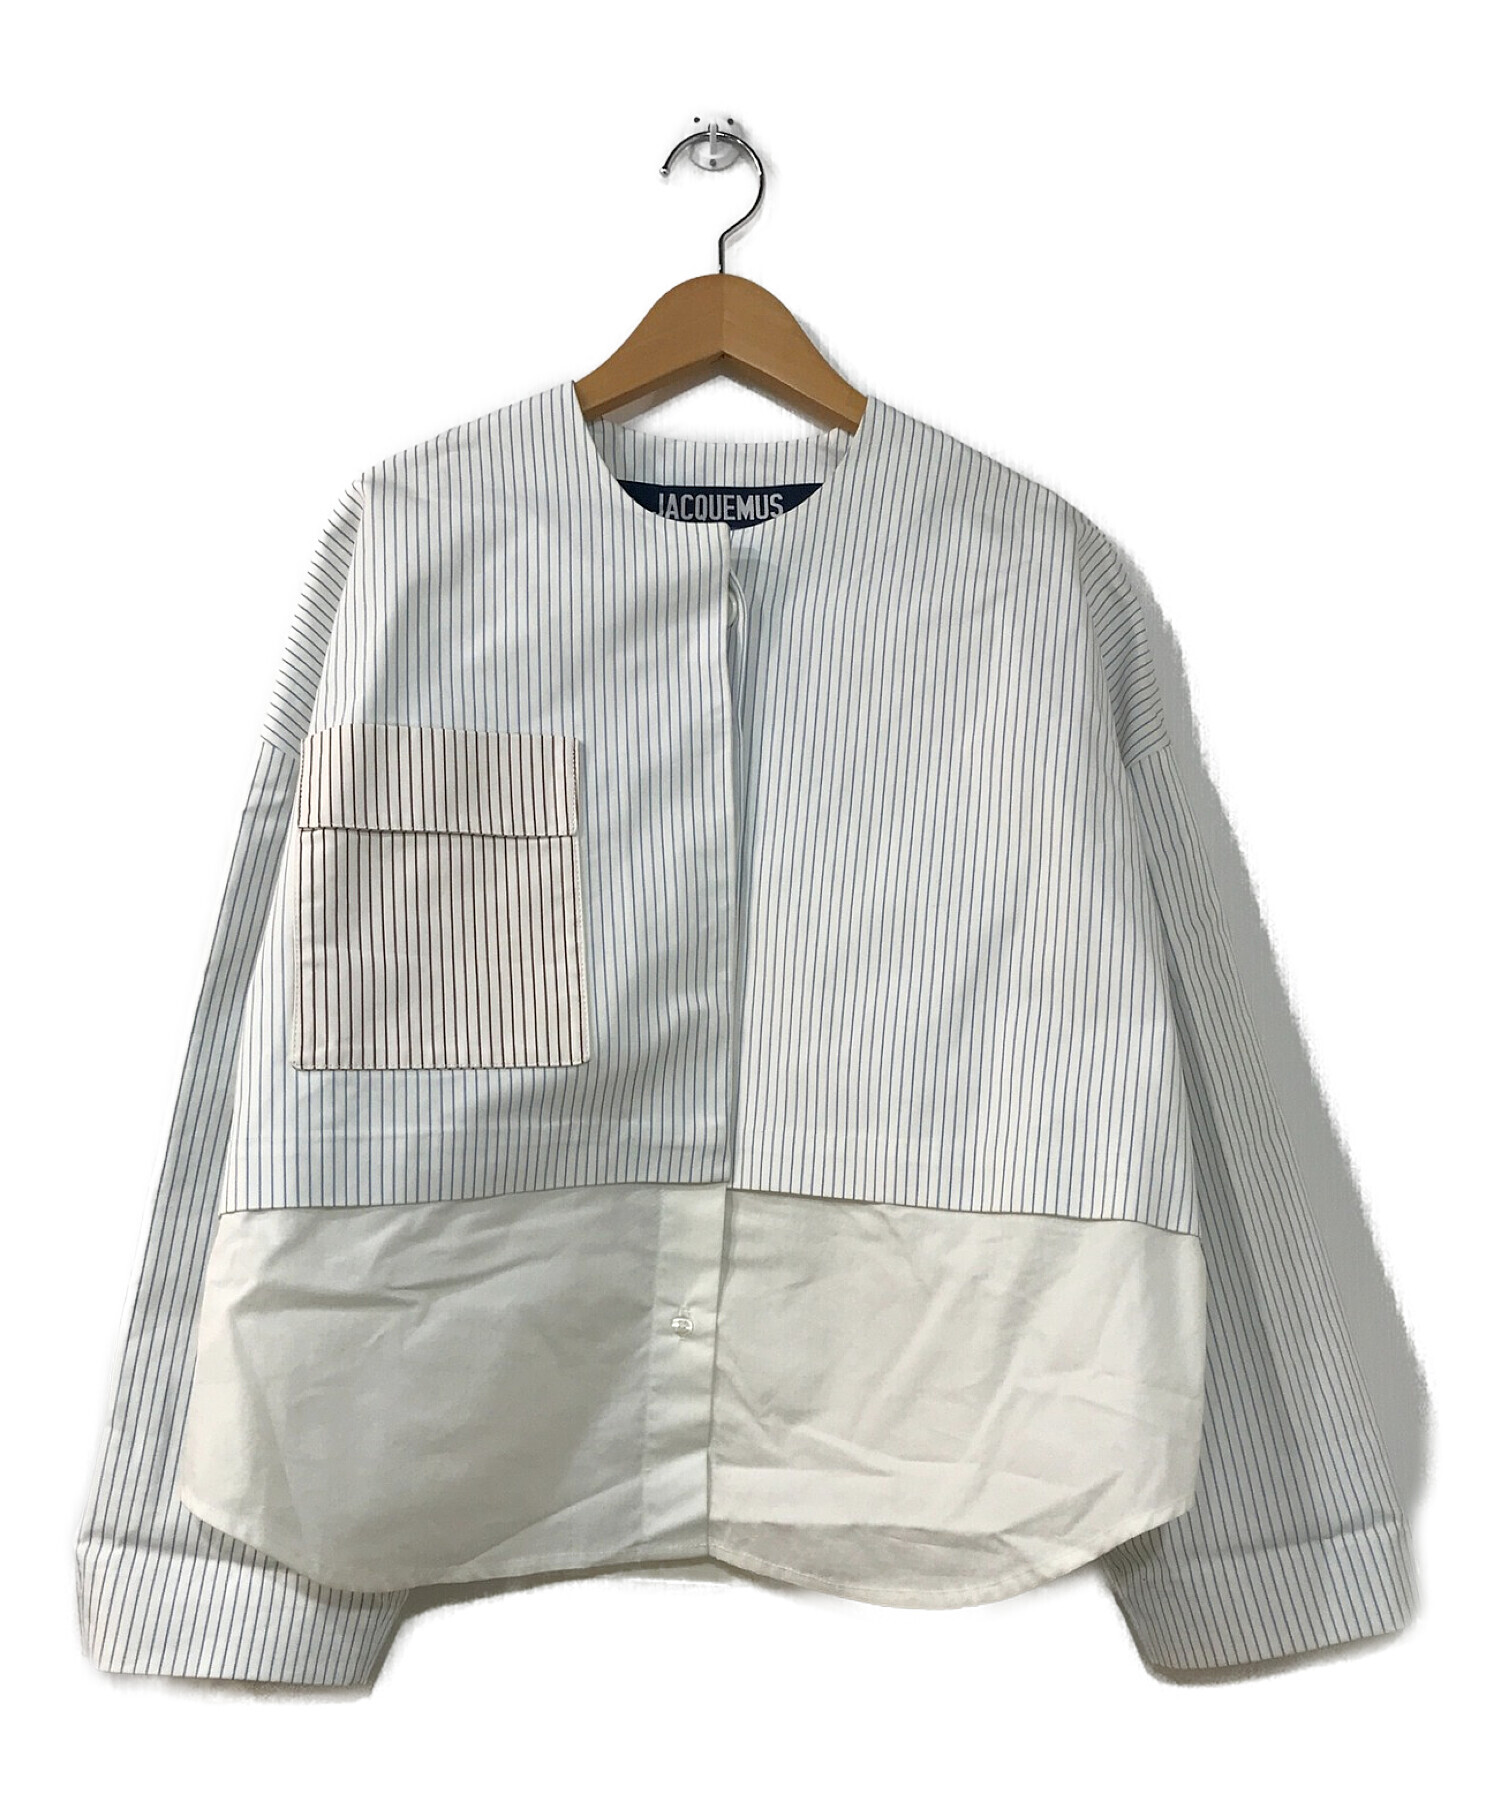 jacquemus (ジャックムス) ノーカラーストライプシャツジャケット ホワイト サイズ:34